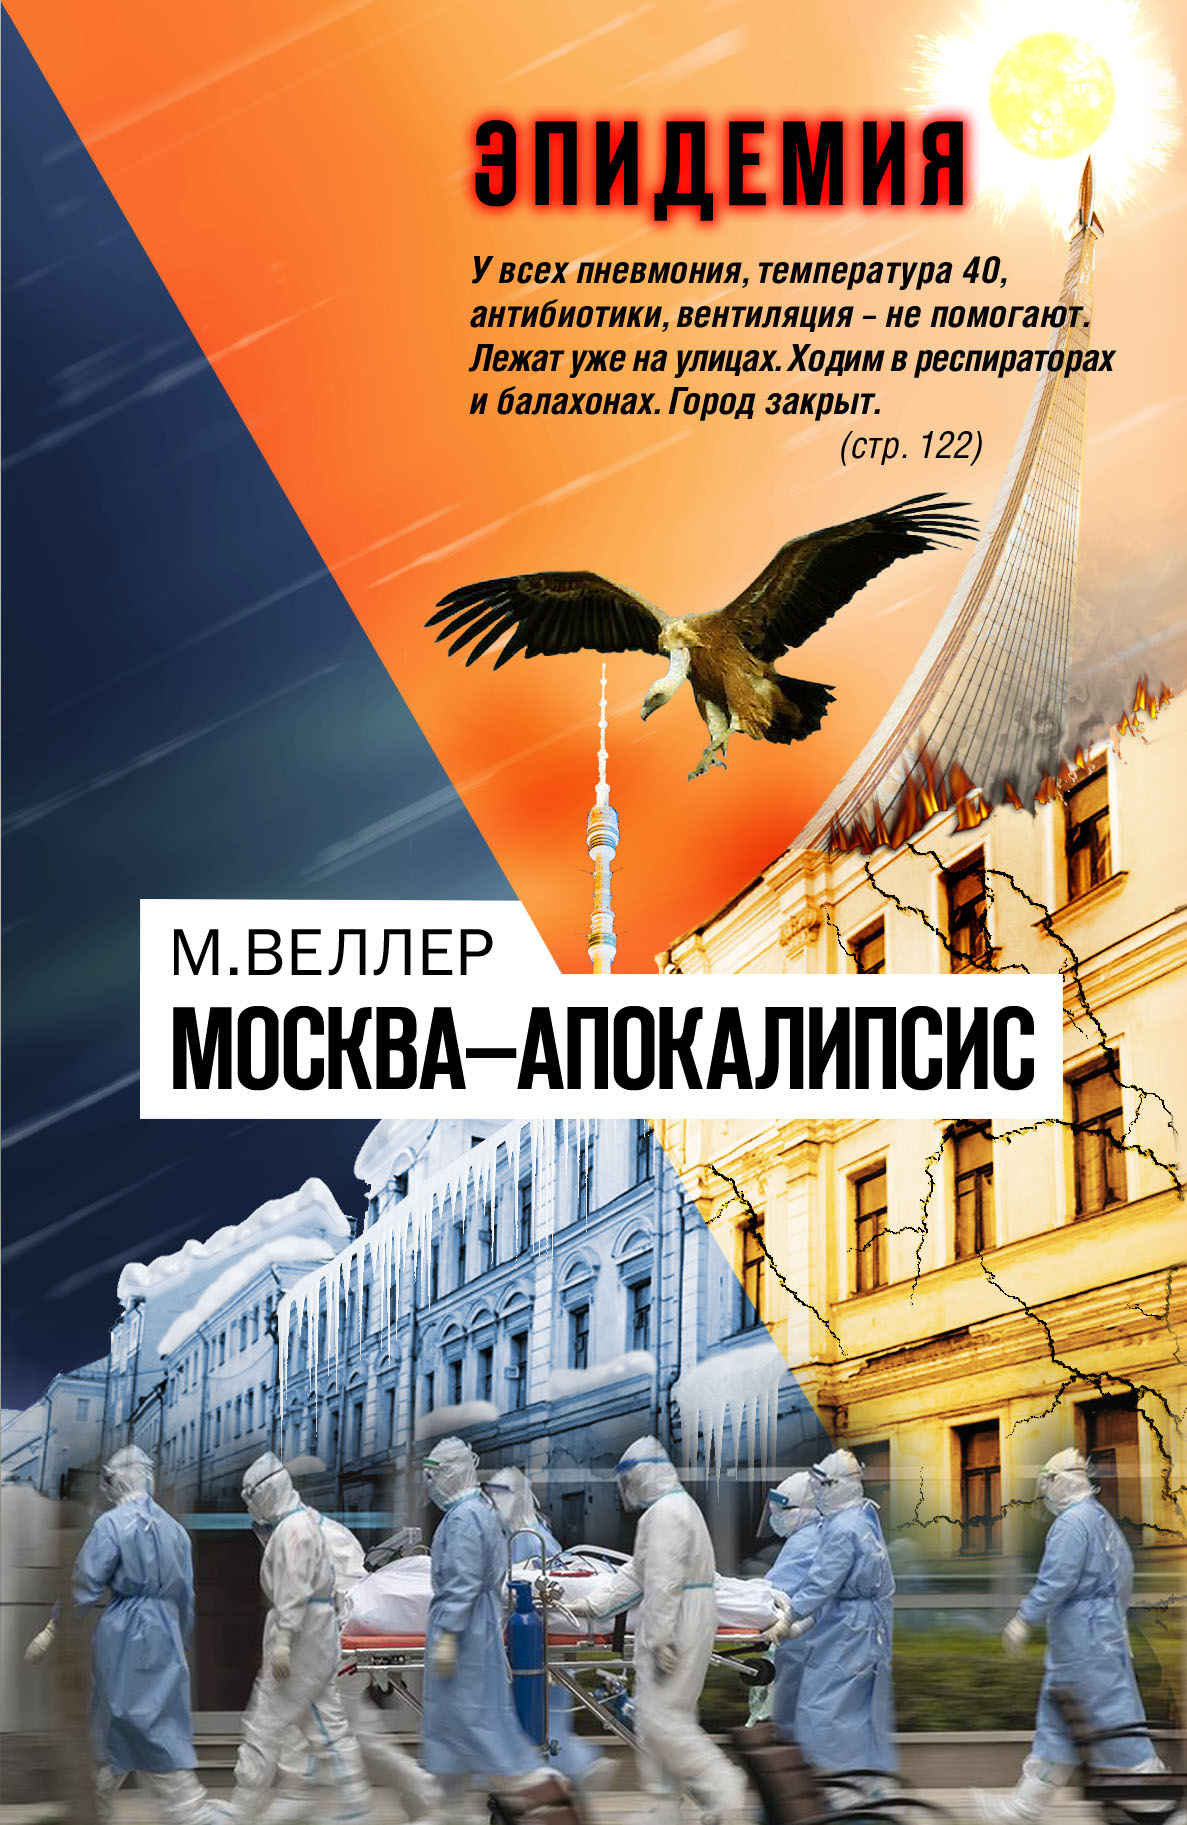 Веллер москва. Книга про апокалипсис в Москве. Москва — апокалипсис Веллер.